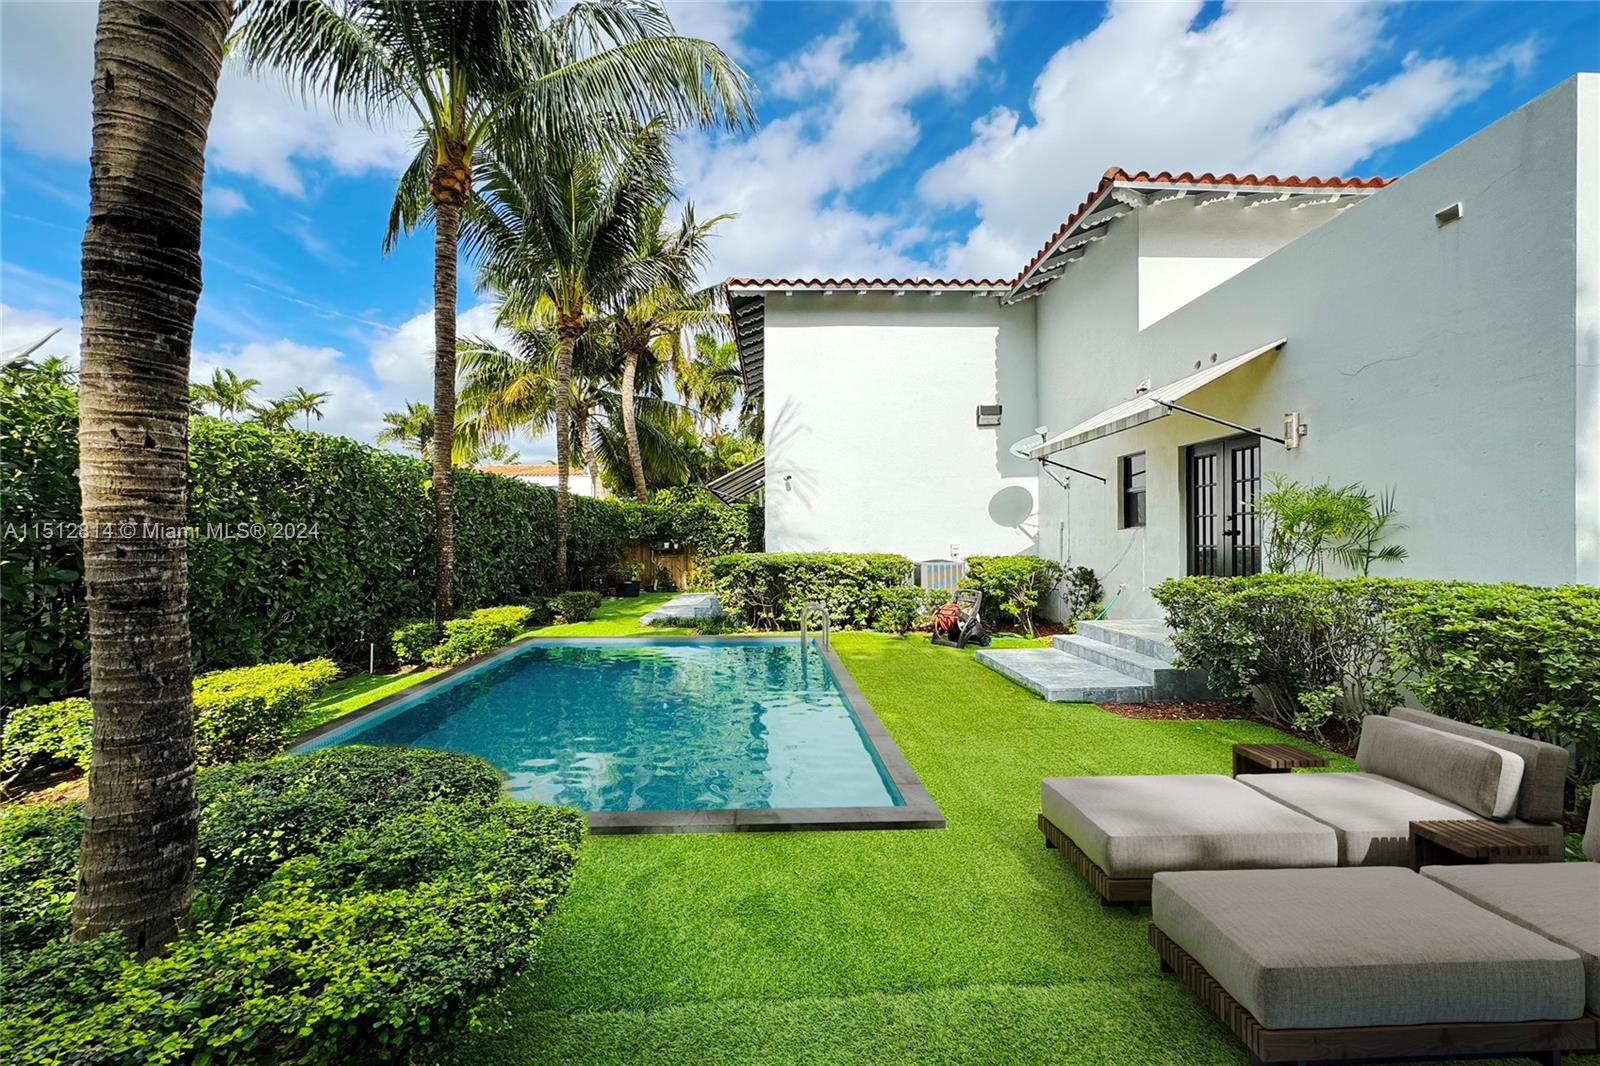 Property for Sale at 4312 Alton Rd Rd, Miami Beach, Miami-Dade County, Florida - Bedrooms: 4 
Bathrooms: 4  - $2,500,000